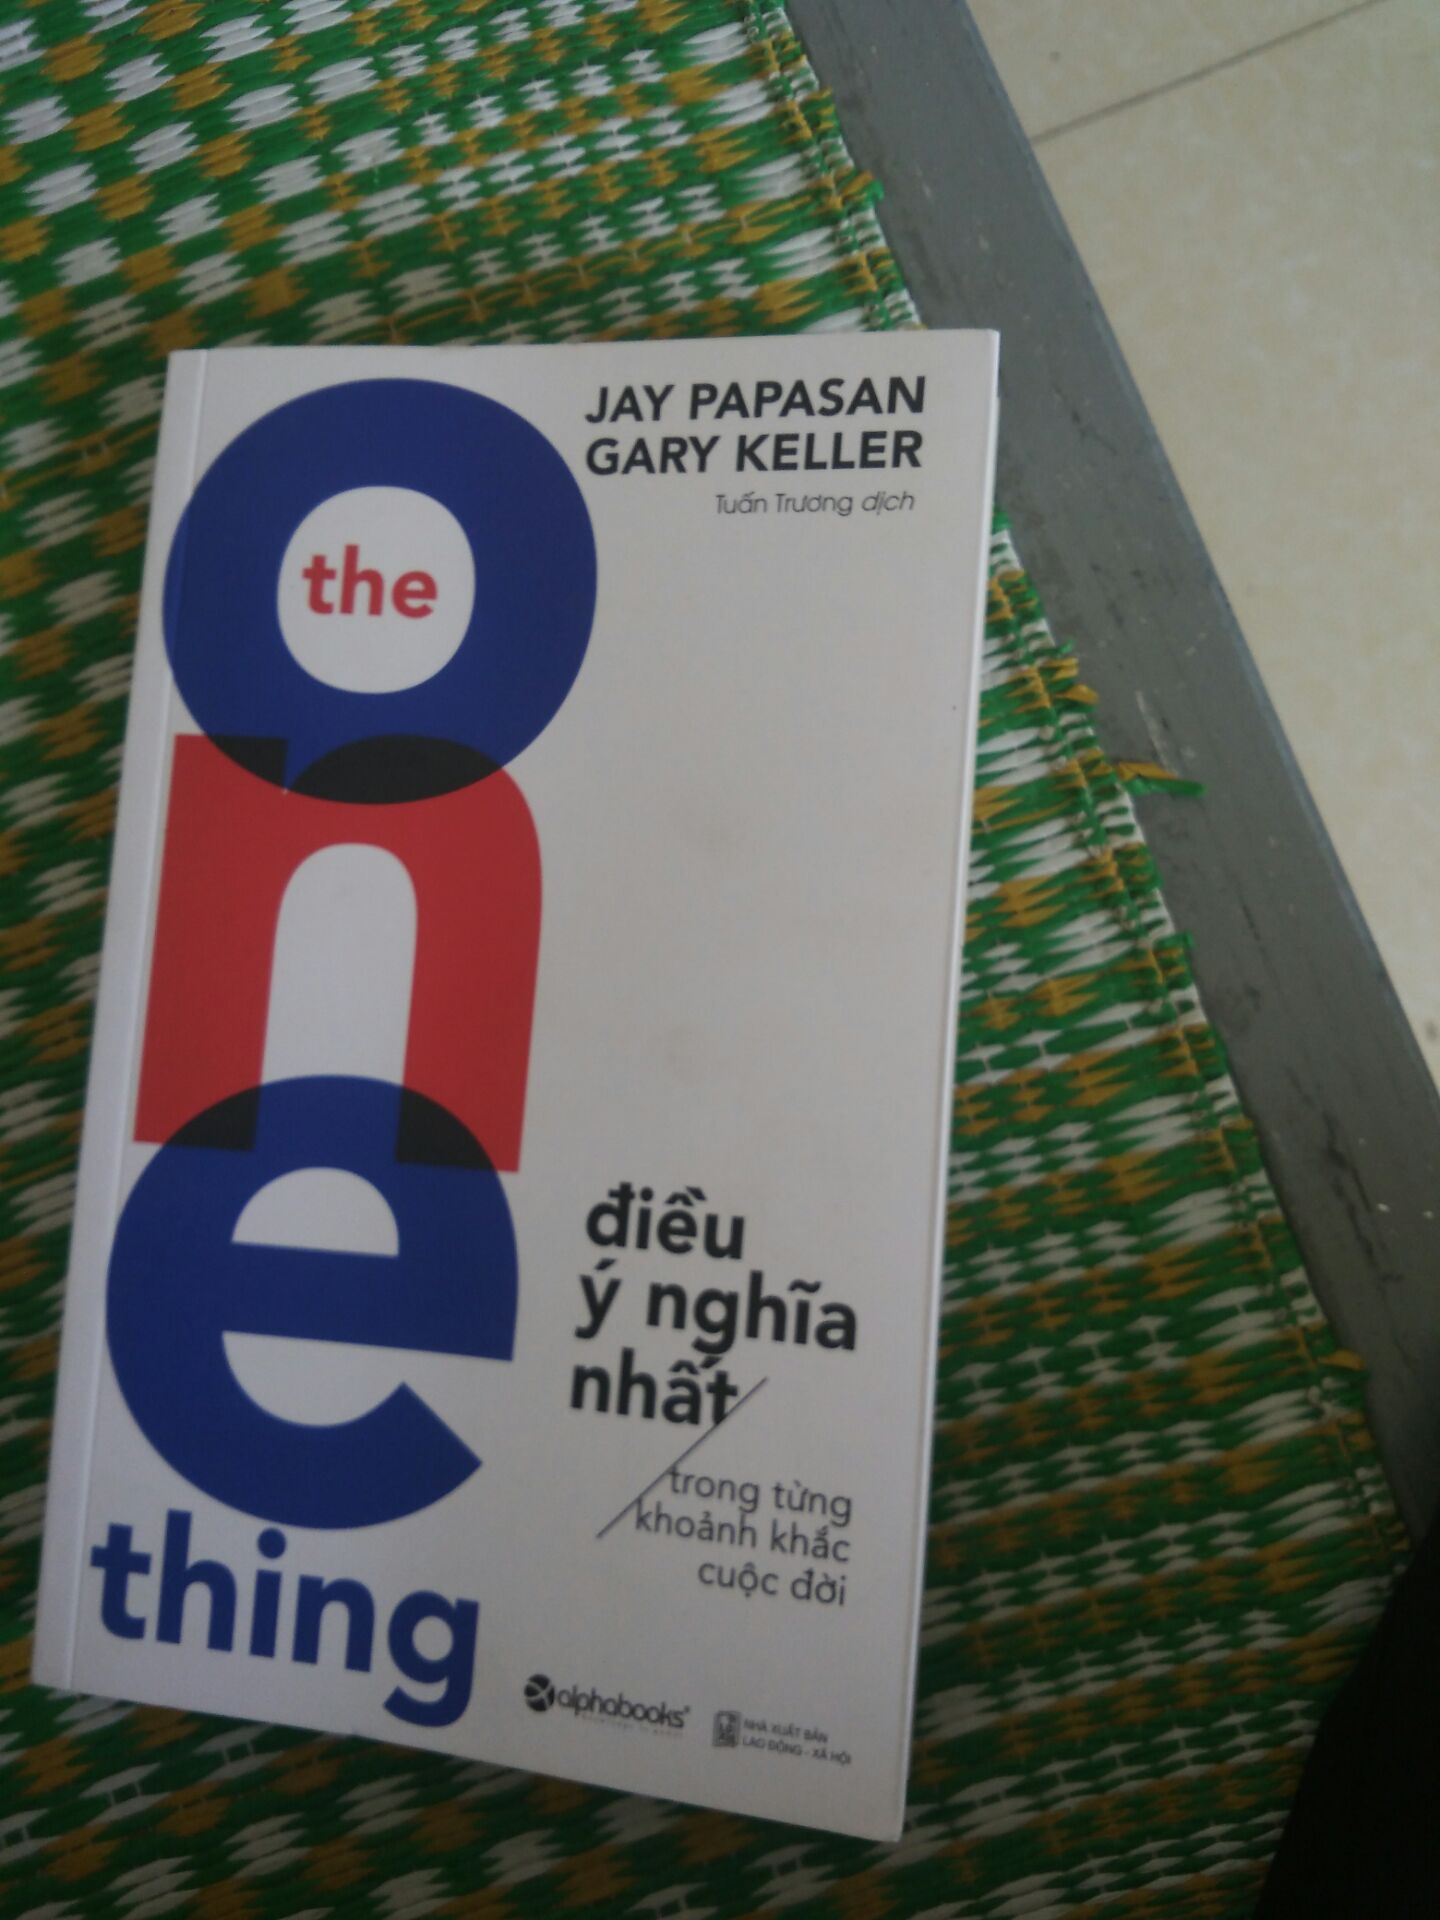 The One Thing - Điều Ý Nghĩa Nhất Trong Từng Khoảnh Khắc Cuộc Đời ( Tái Bản )